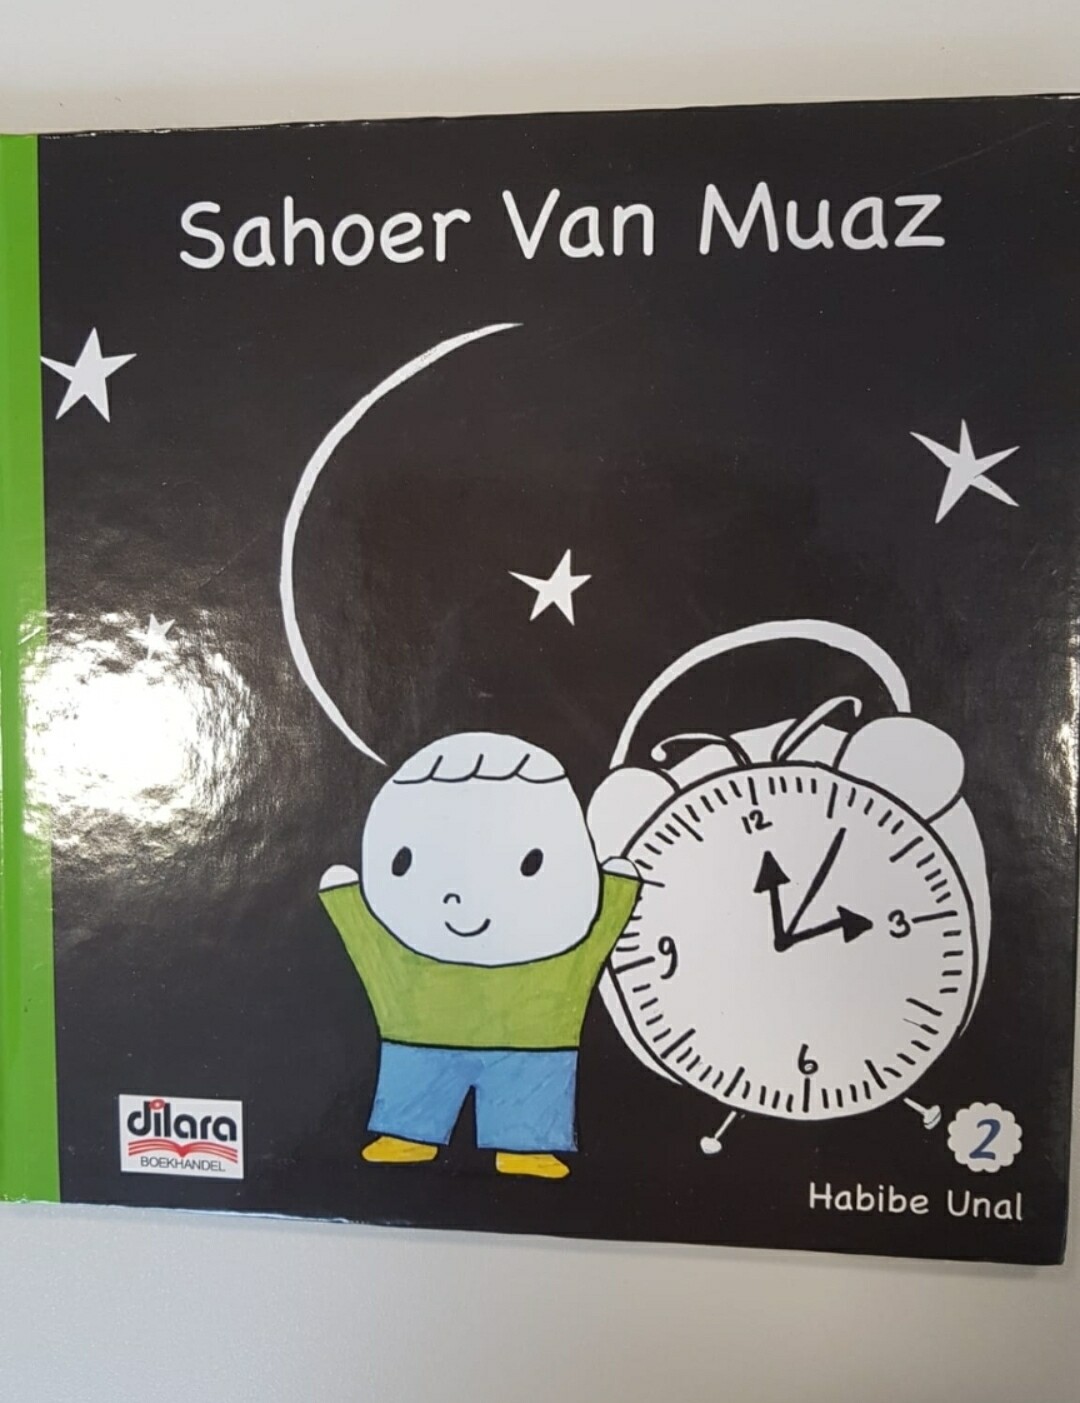 Sahoer Van Muaz